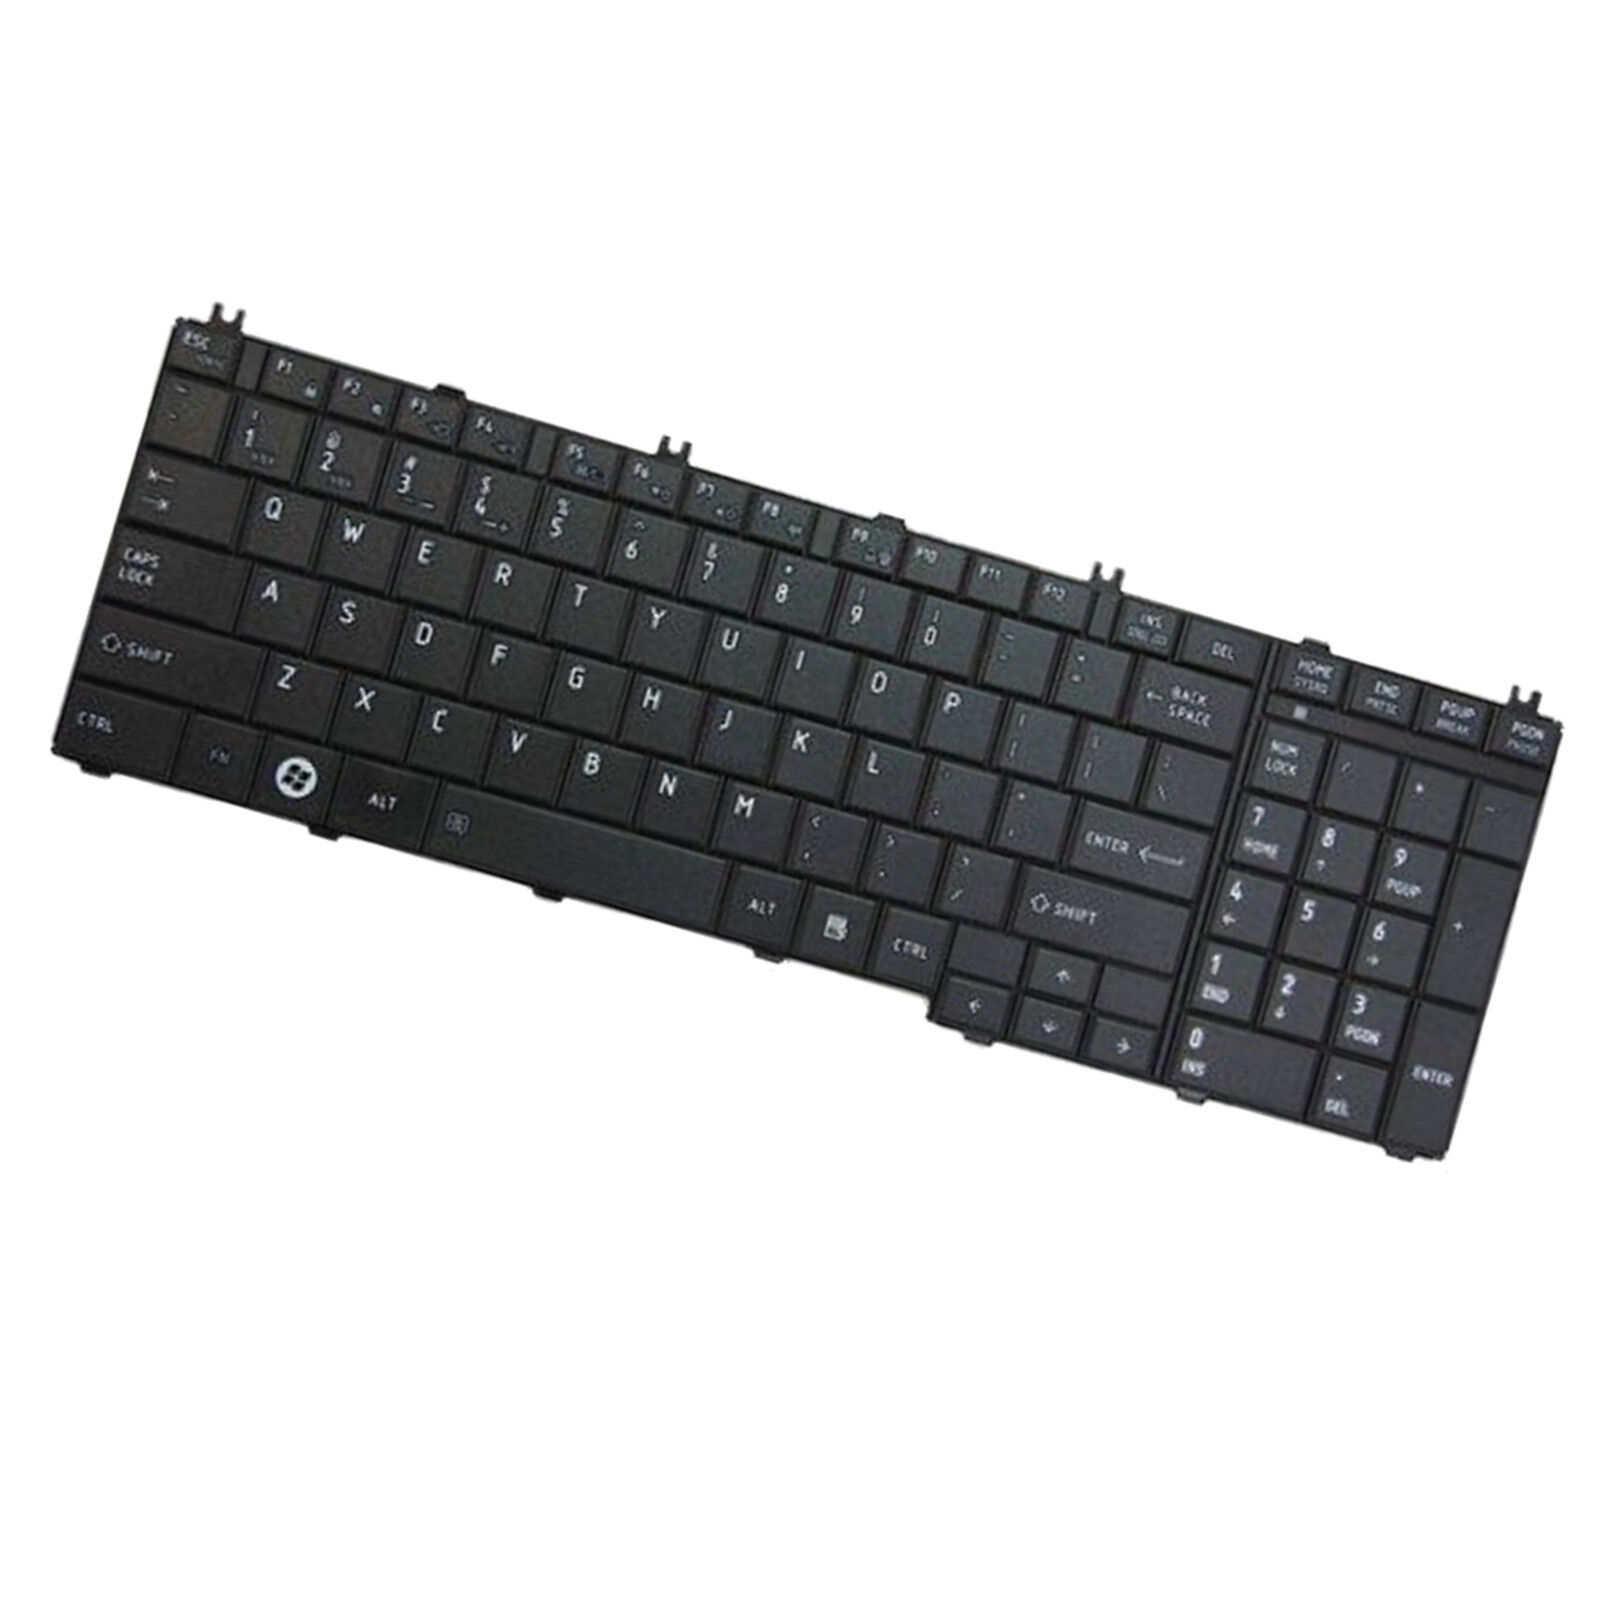 HQRP US Keyboard for Toshiba L775-S7250, L775D-S7132, L775D-S7135, L775D-S7206